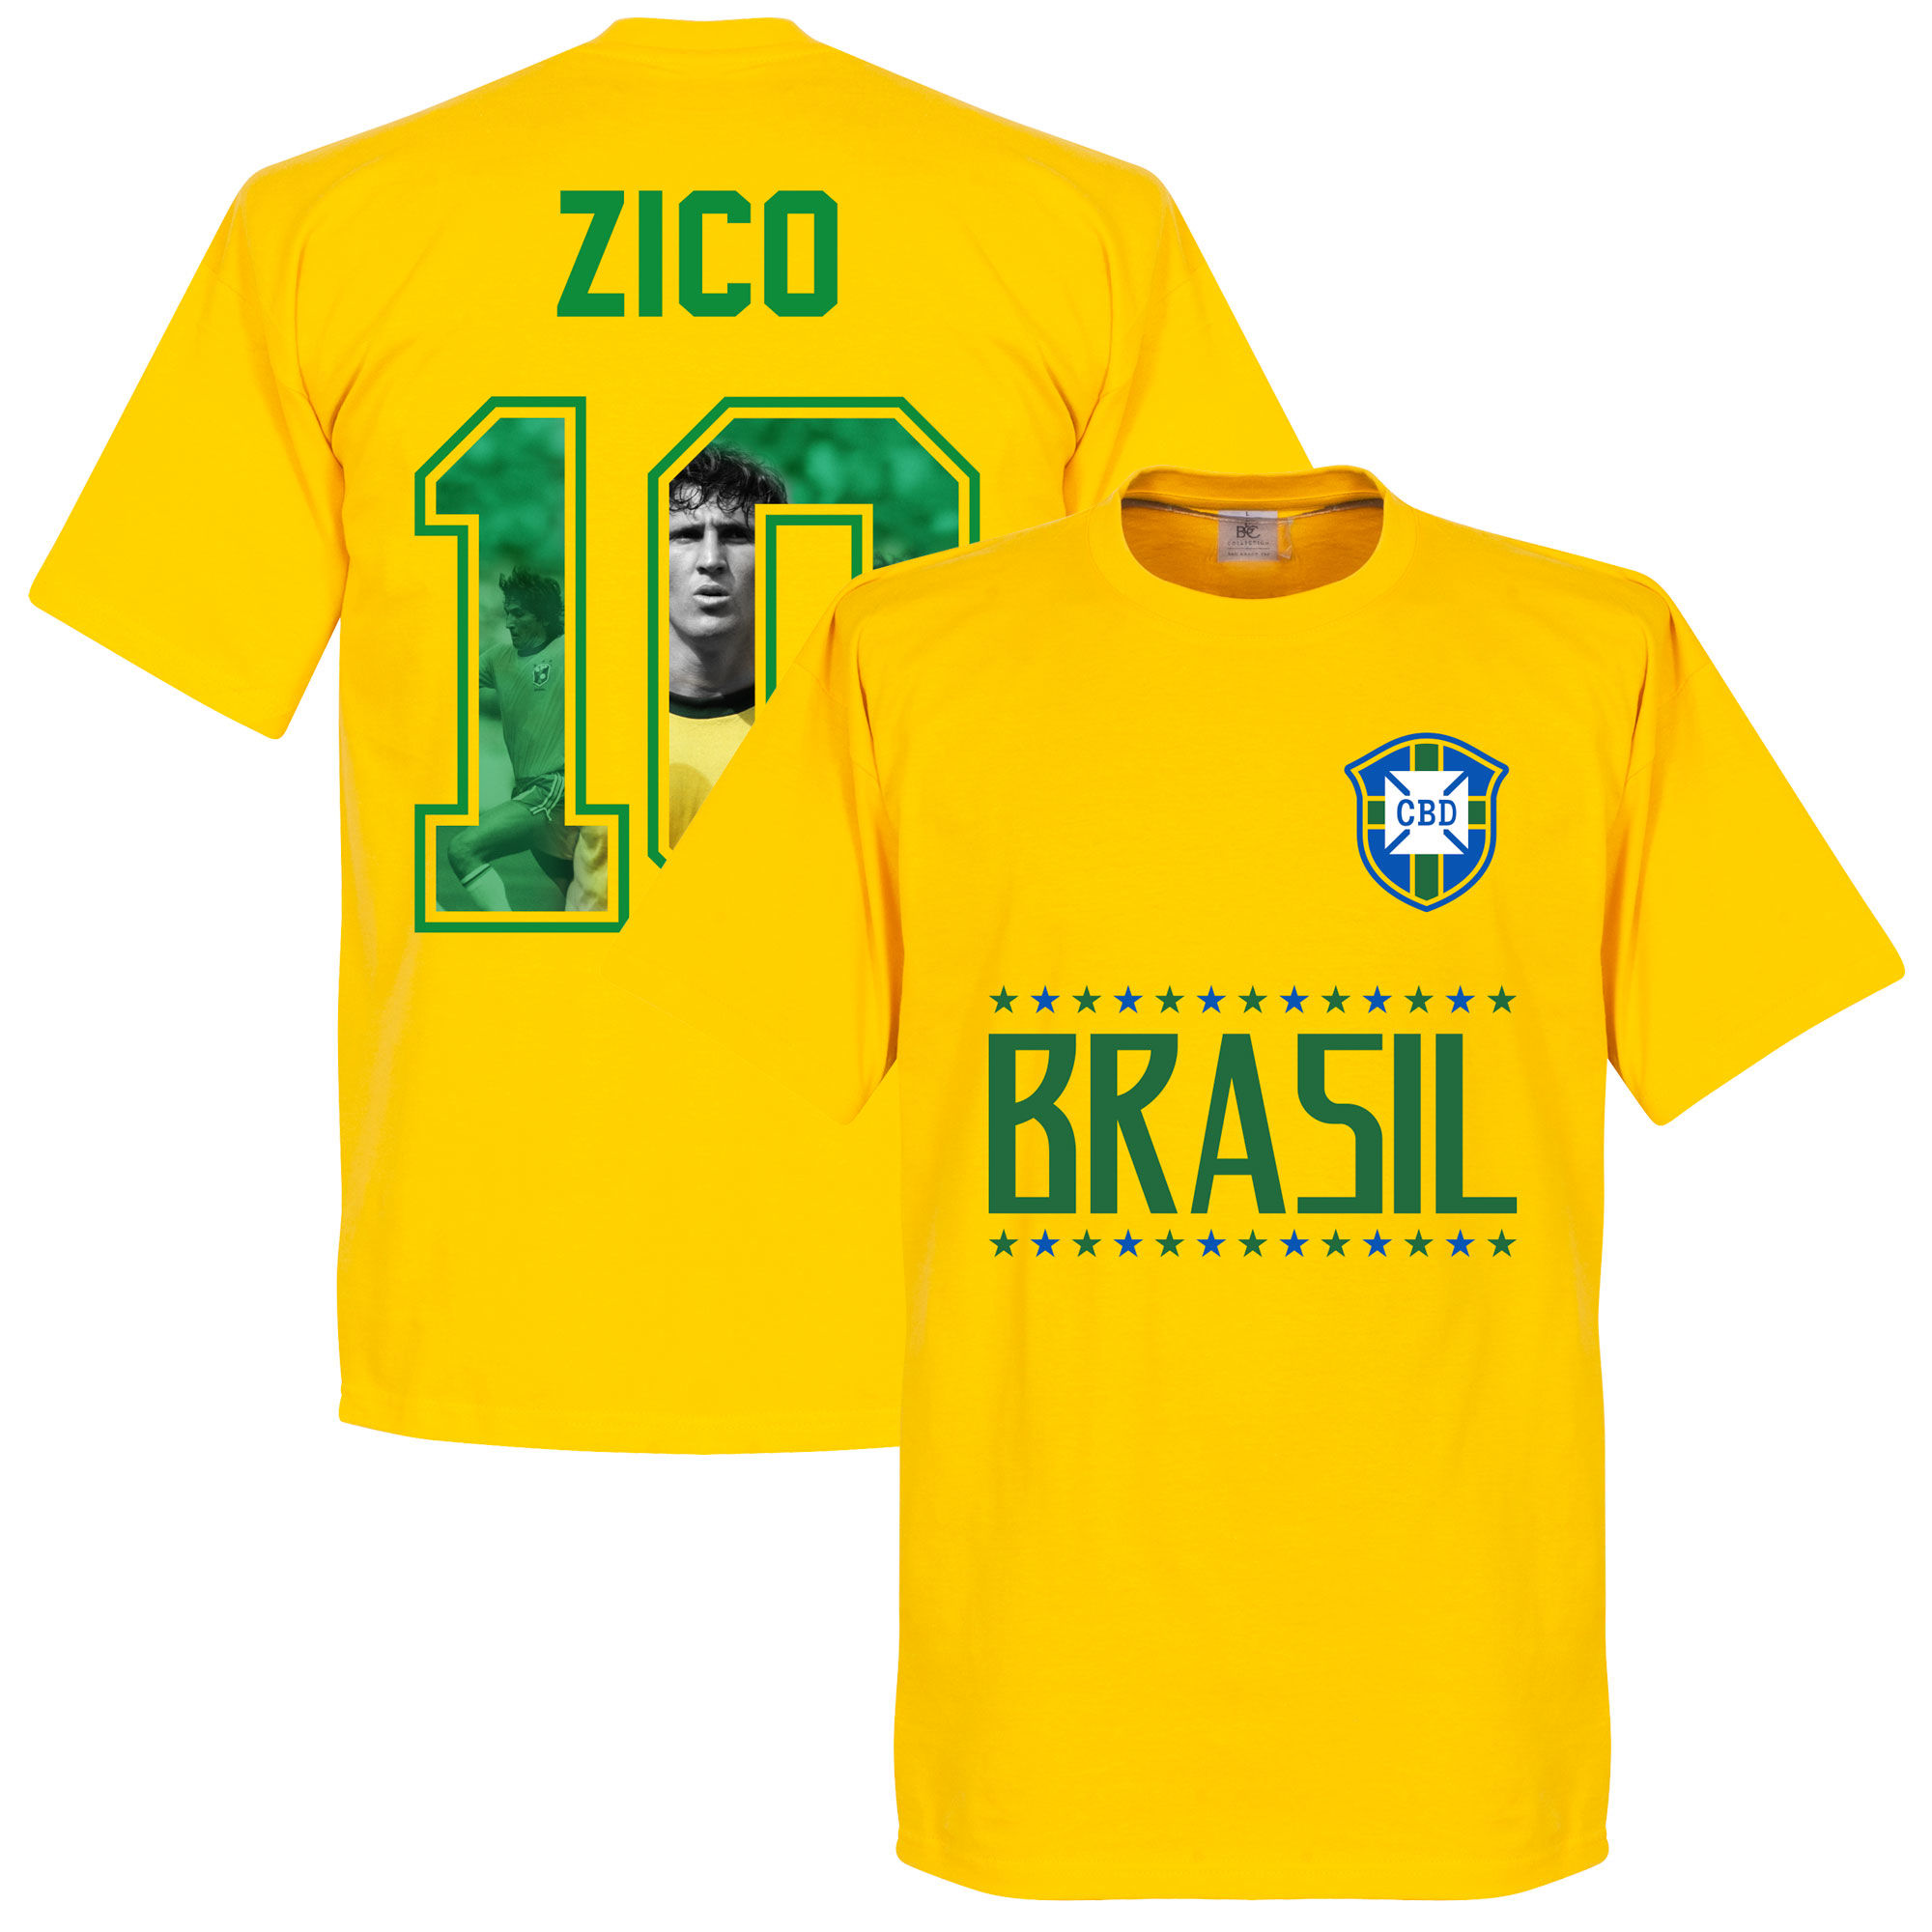 Brazílie - Tričko "Gallery Team" - Zico, žluté, číslo 10